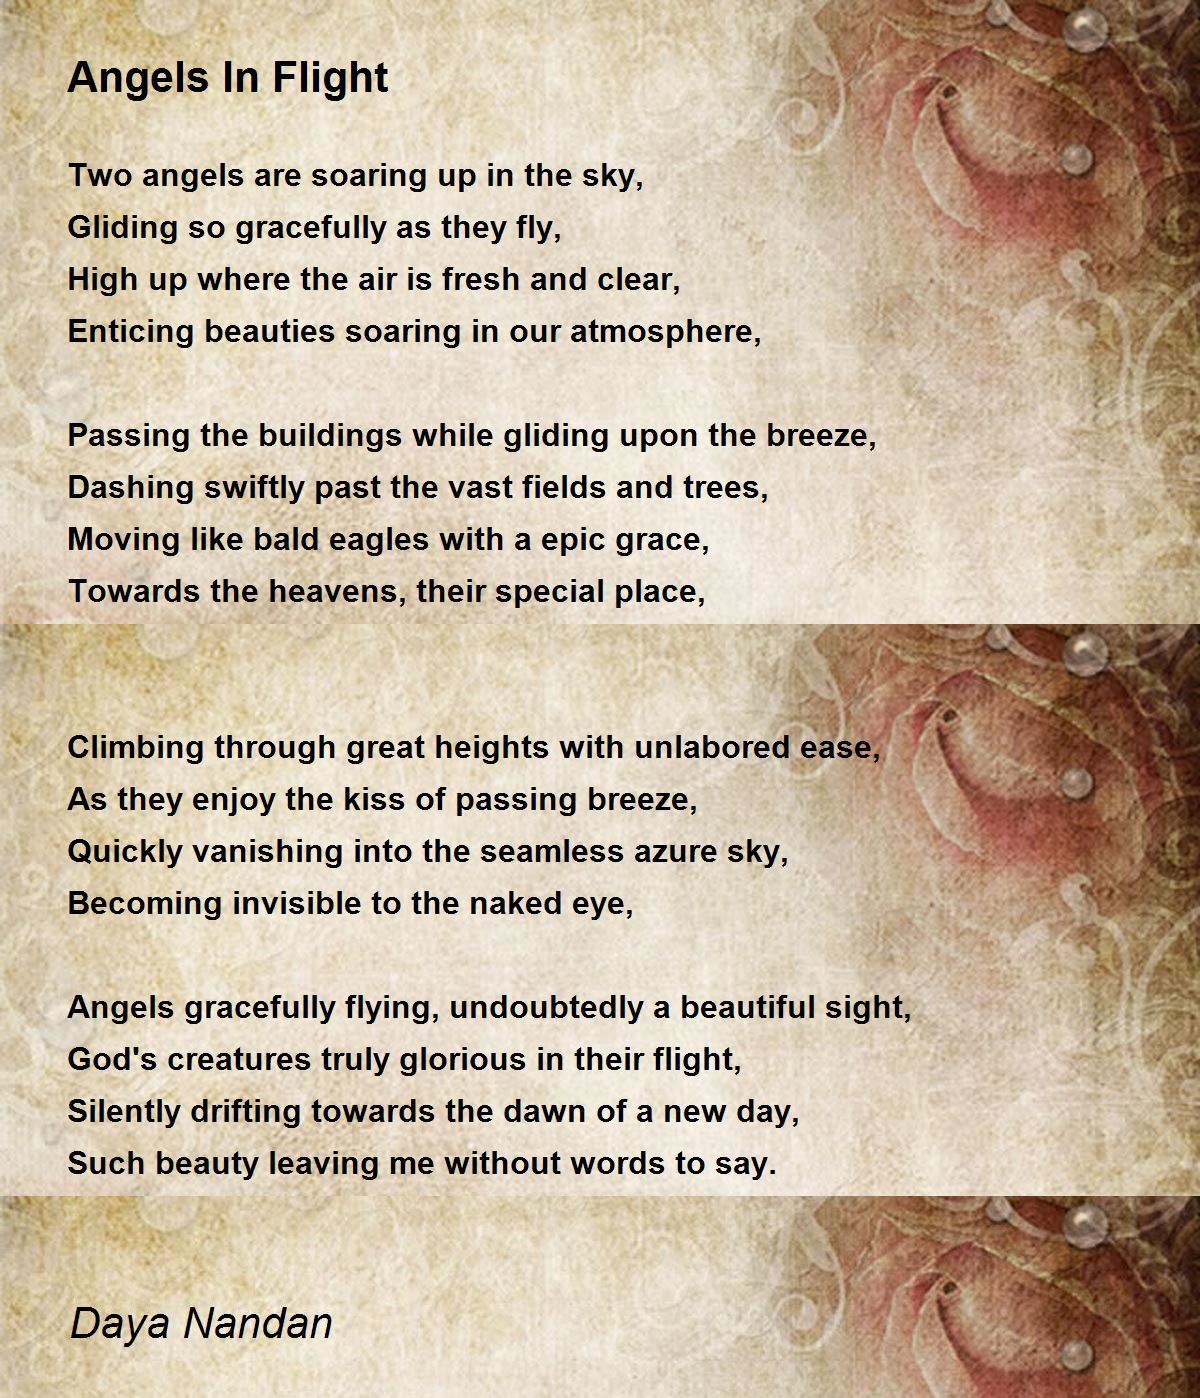 Angels In Flight - Angels In Flight Poem by Daya Nandan